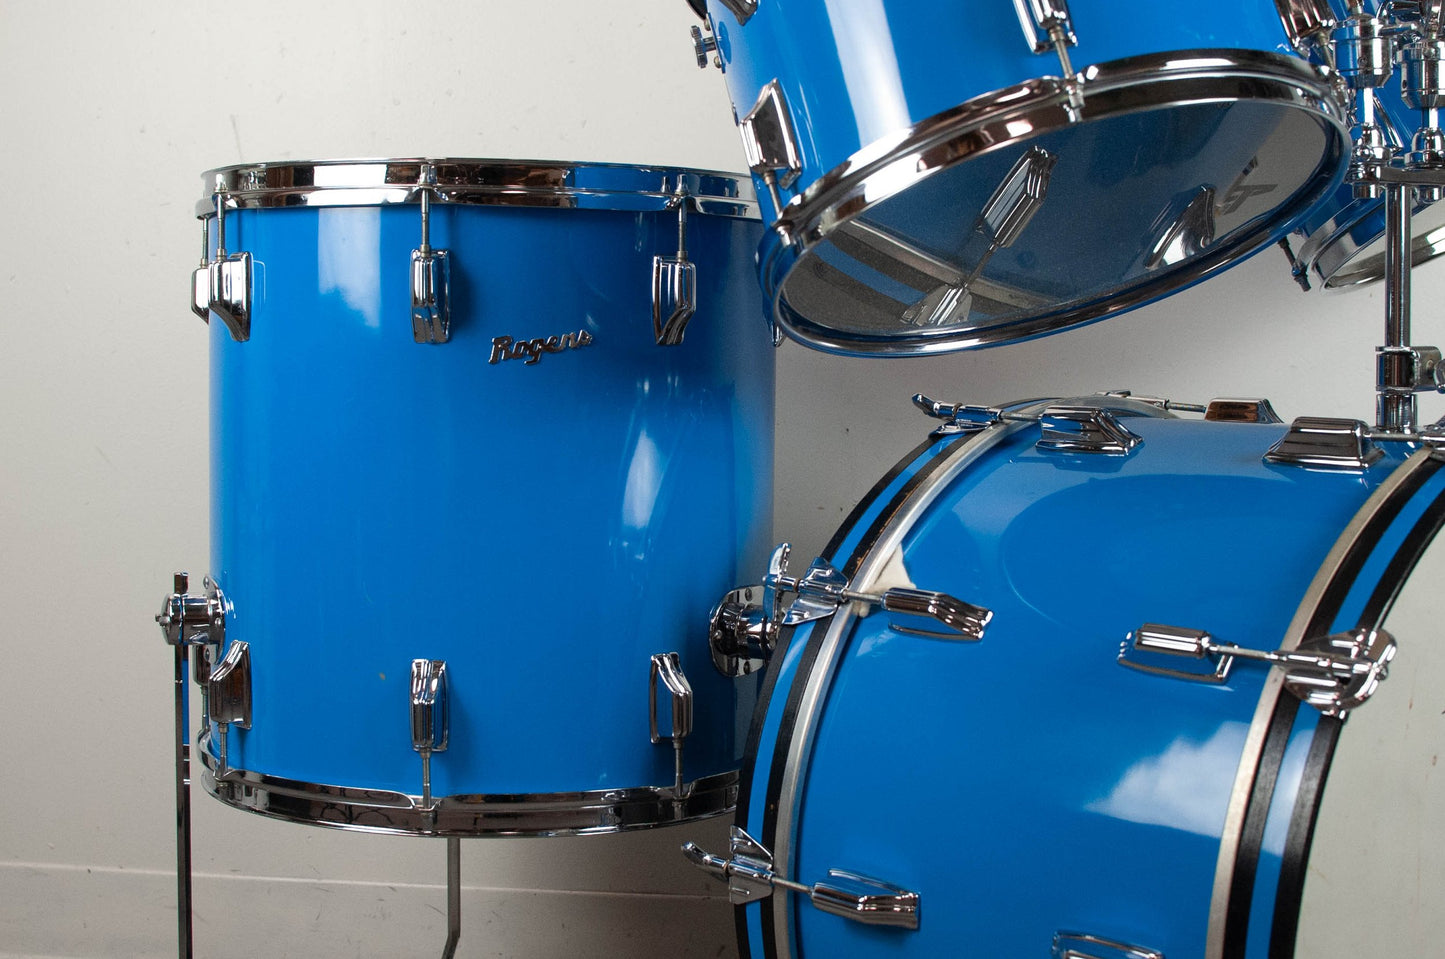 1970s Rogers Londoner Pacific Blue Drum Set